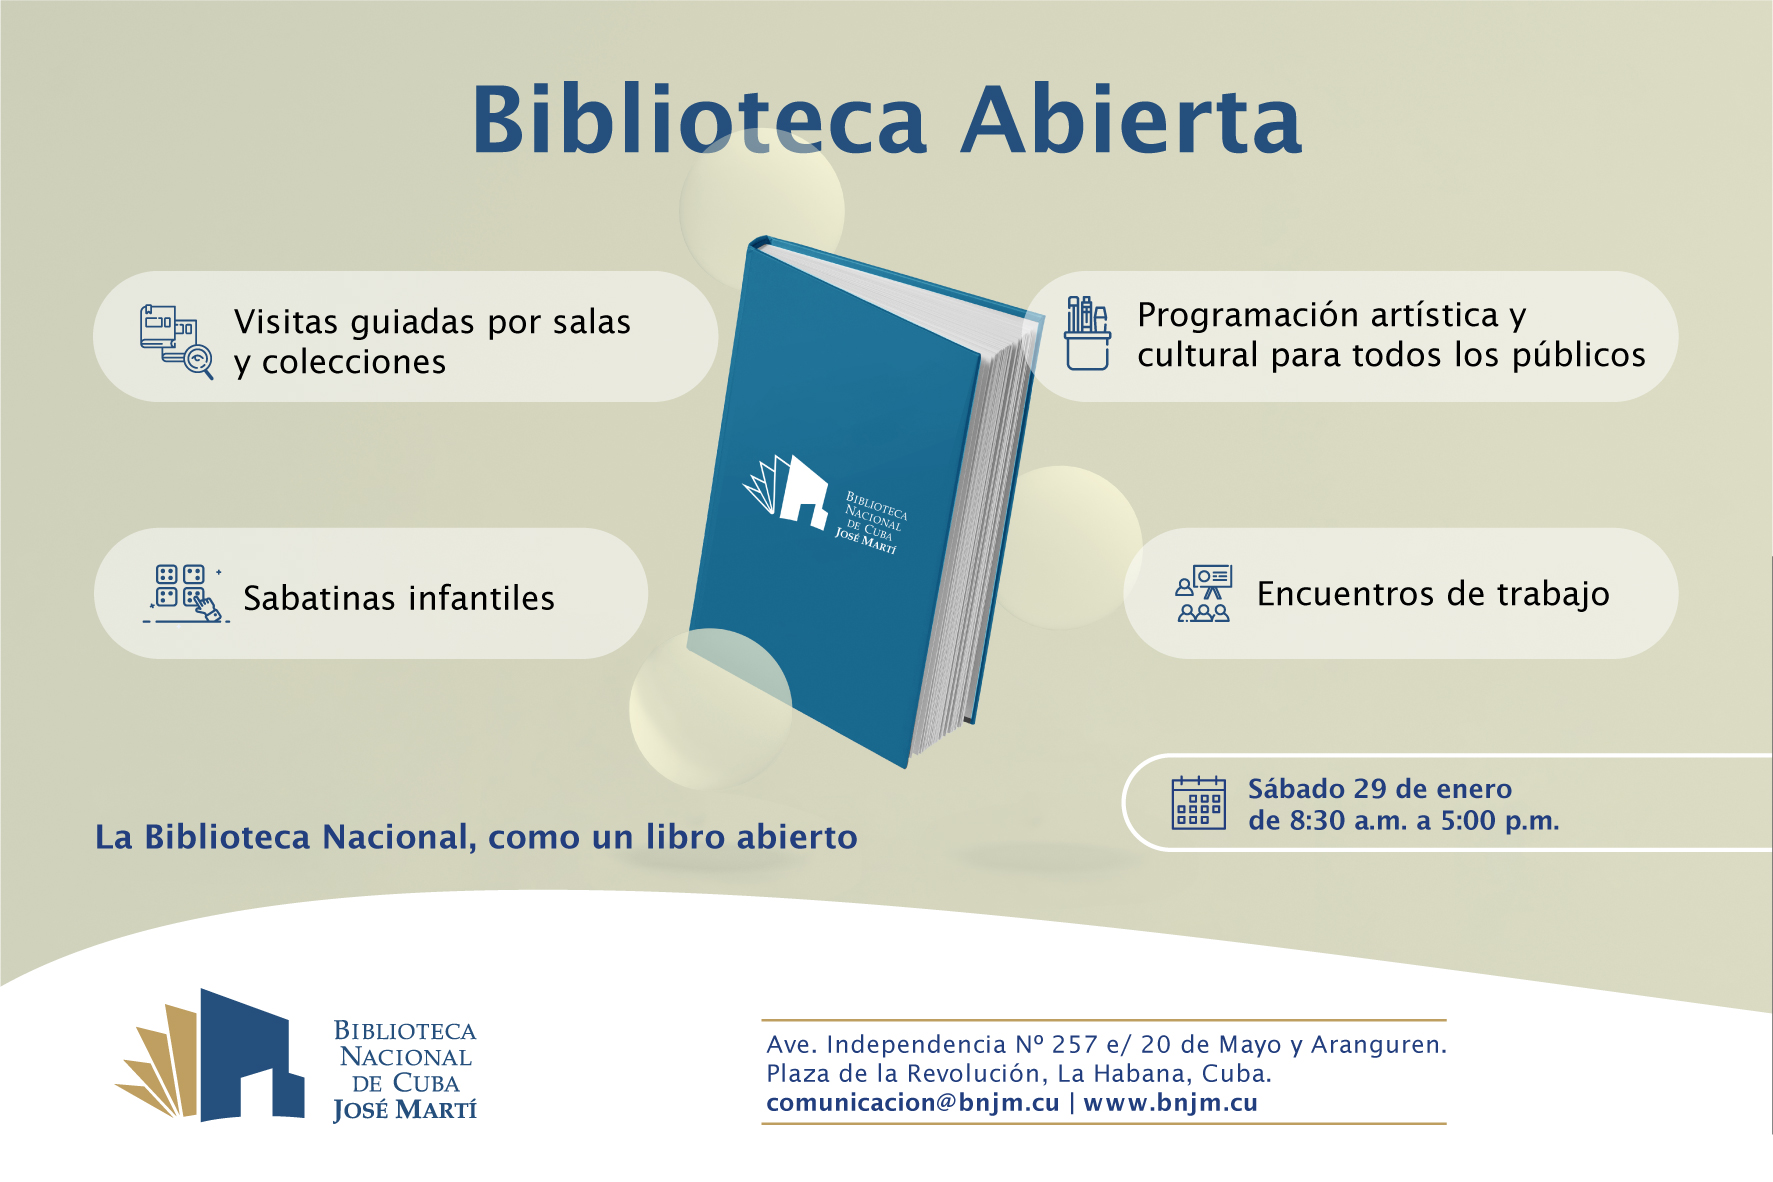 Foto de Biblioteca Abierta. Sábado 29 de enero, de 8:30 a.m. a 5:00 p.m. La Biblioteca Nacional, como un libro abierto